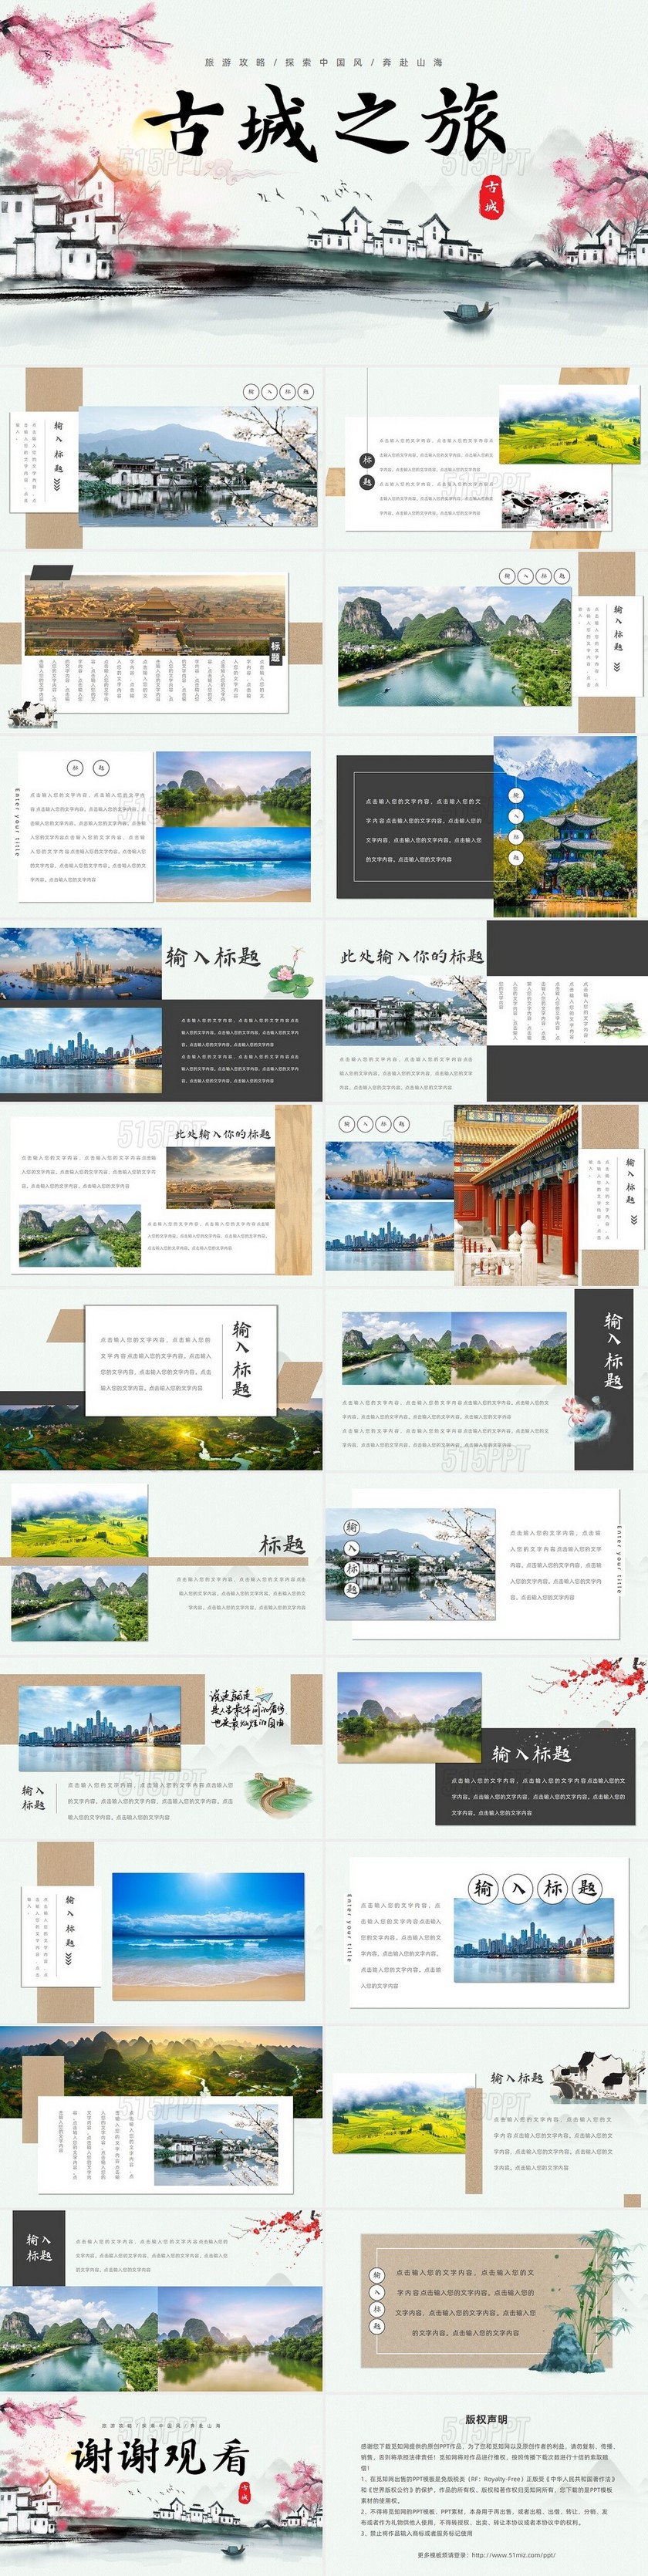 水墨旅游旅游攻略探索中国风古城之旅纪念相册纪念册PPT模板